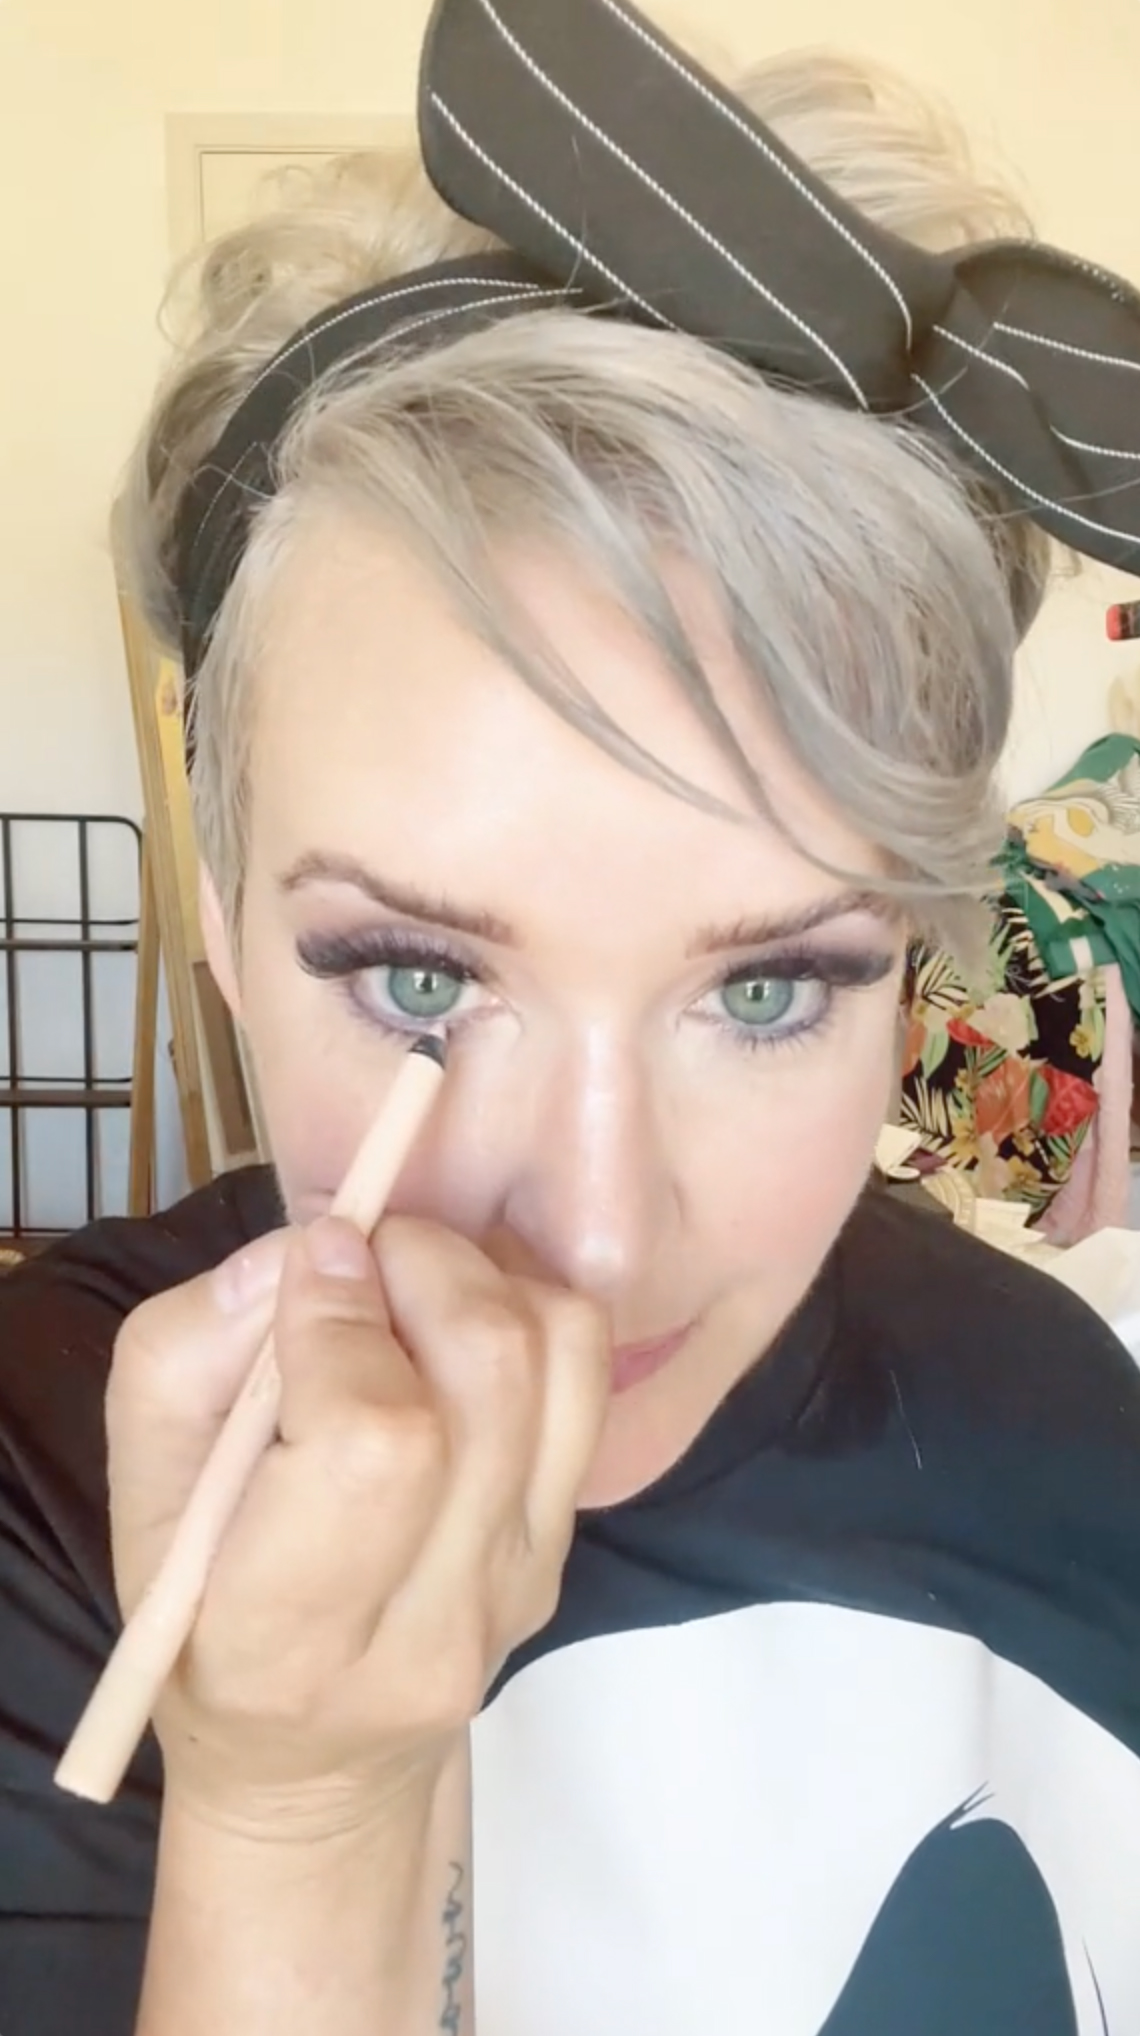 Zu ihrem 30-sekündigen Make-up-Hack gehörte ein weißer Eyeliner, der ihr Glamour-Augenspiel aufwertete